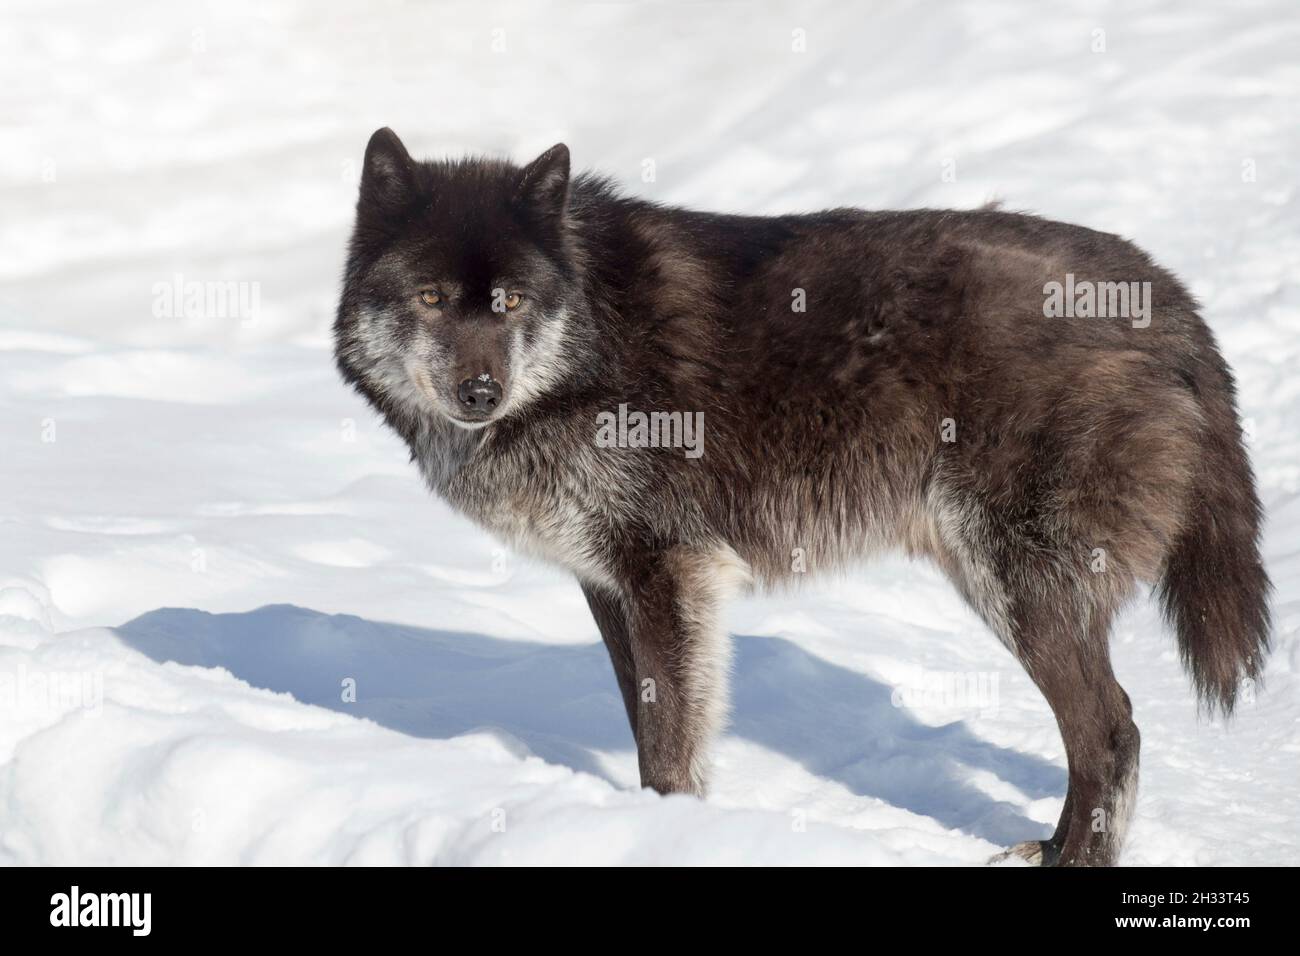 Il lupo canadese nero selvaggio sta guardando la macchina fotografica. Canis lupus pambasileus. Animali nella fauna selvatica. Foto Stock